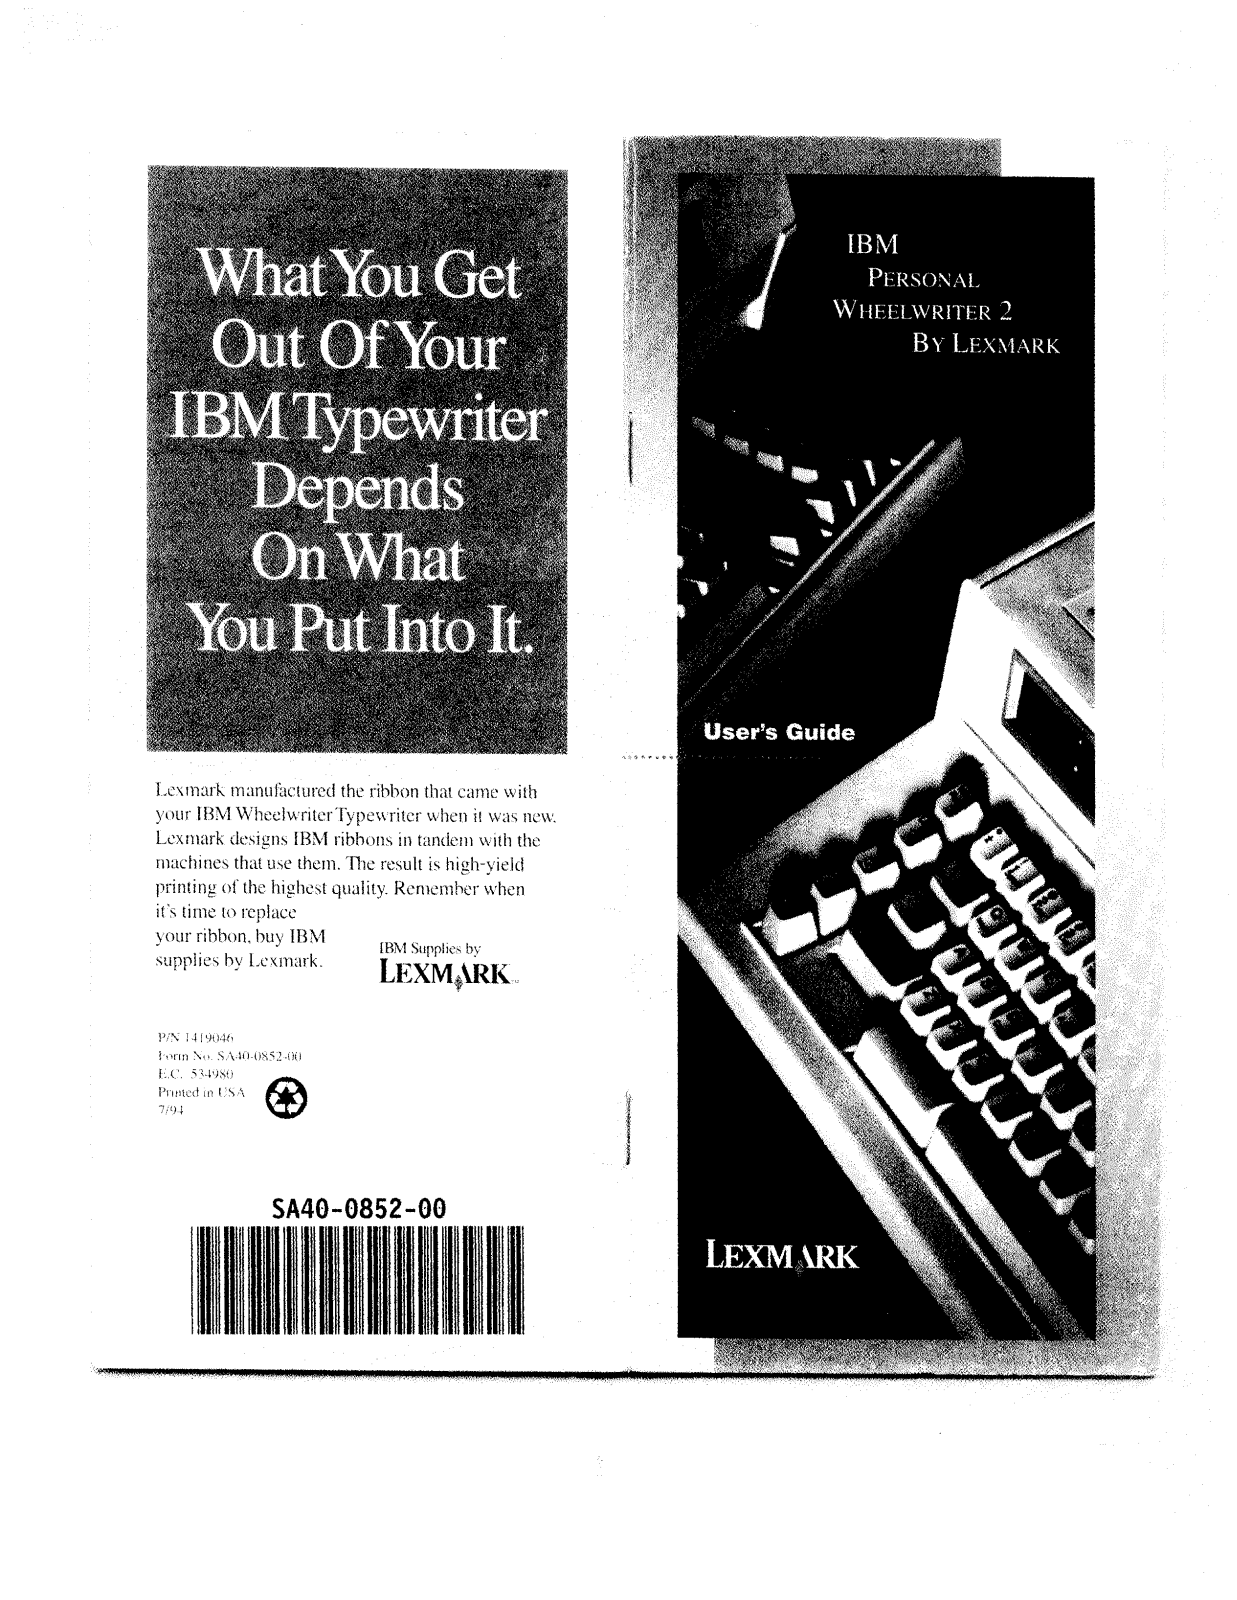 Lexmark IBM PERSONAL WHEELWRITER 2 Manual